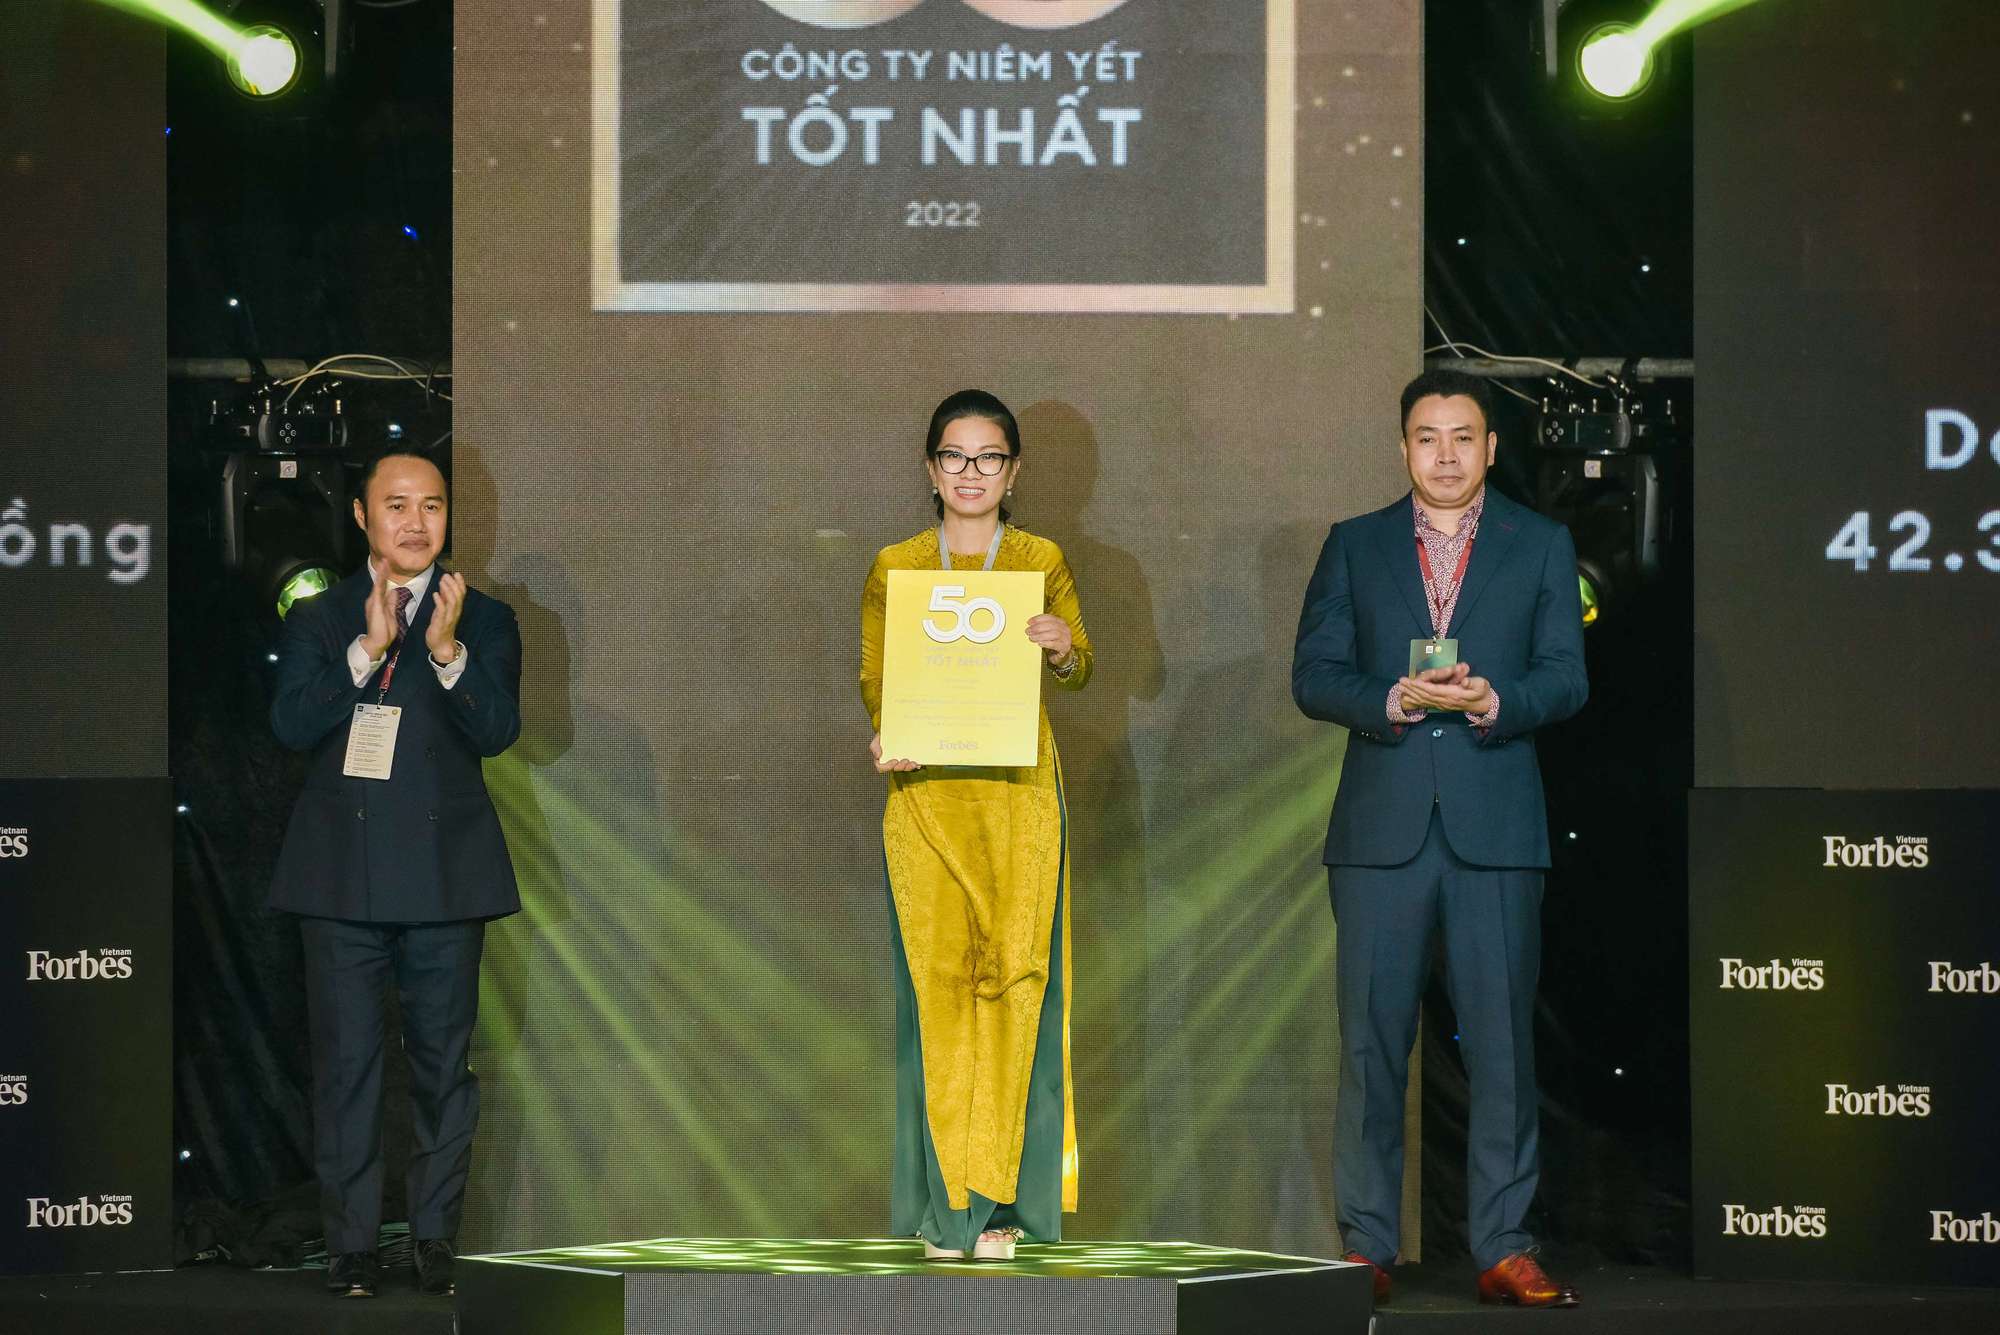 Vietcombank – ngân hàng duy nhất 10 lần liên tục được vinh danh Top 50 công ty niêm yết tốt nhất Việt Nam - Ảnh 1.